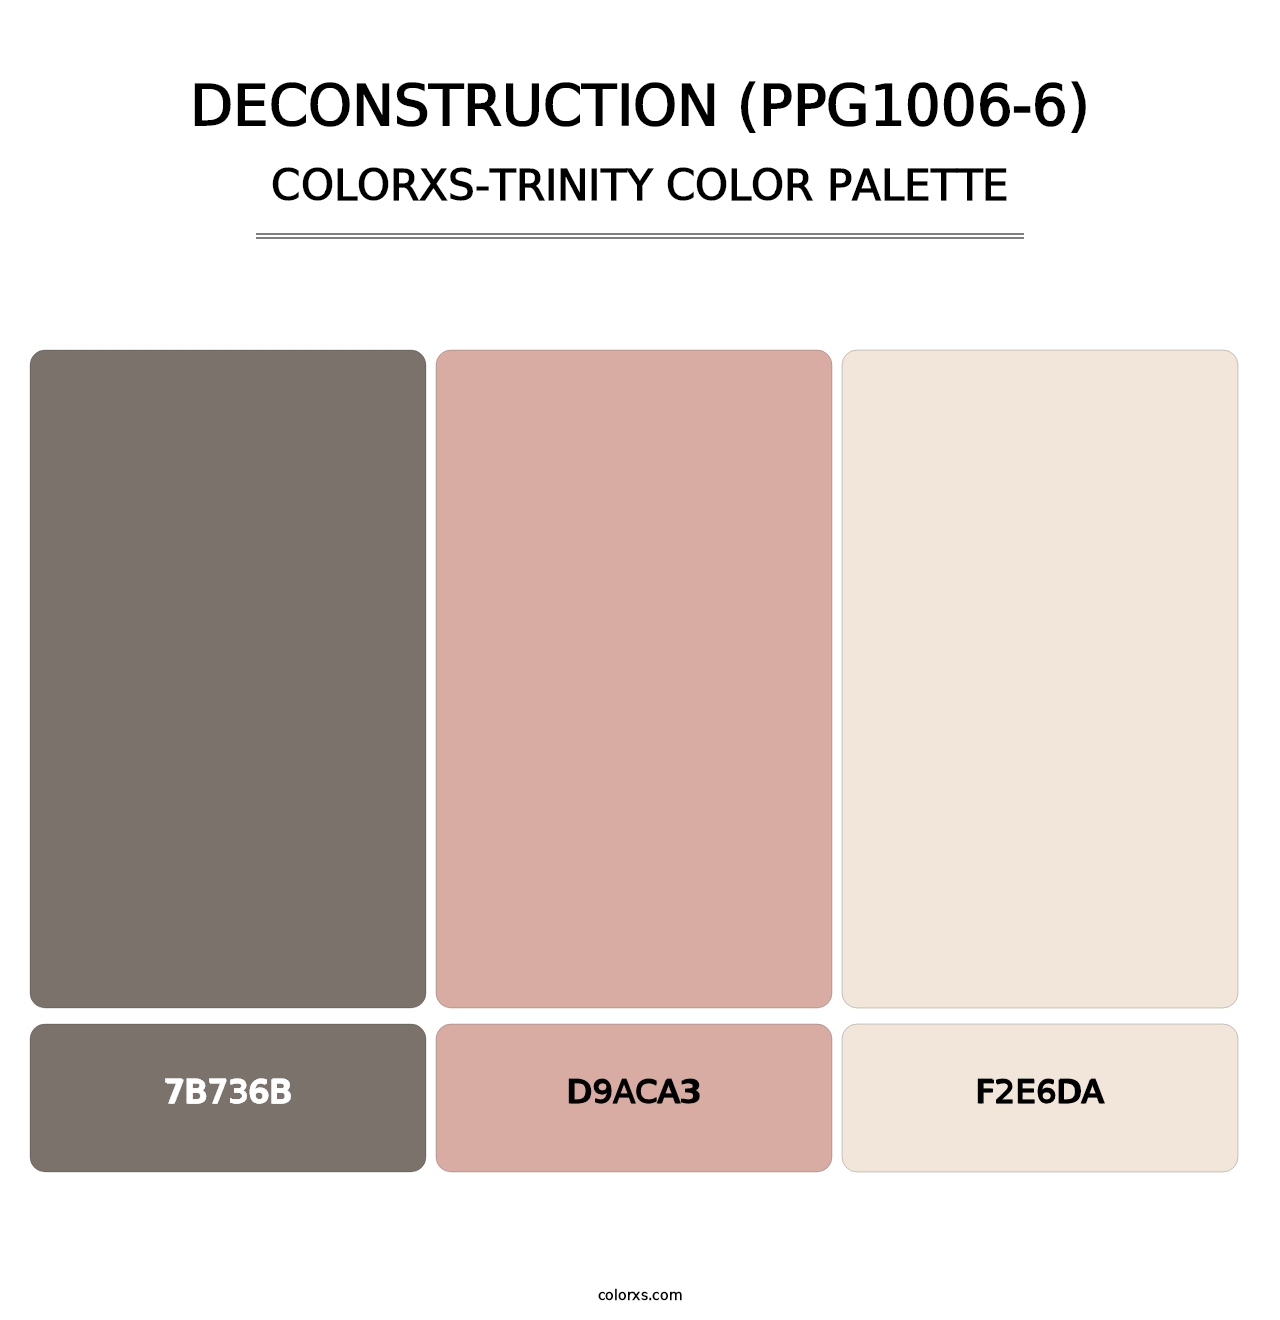 Deconstruction (PPG1006-6) - Colorxs Trinity Palette